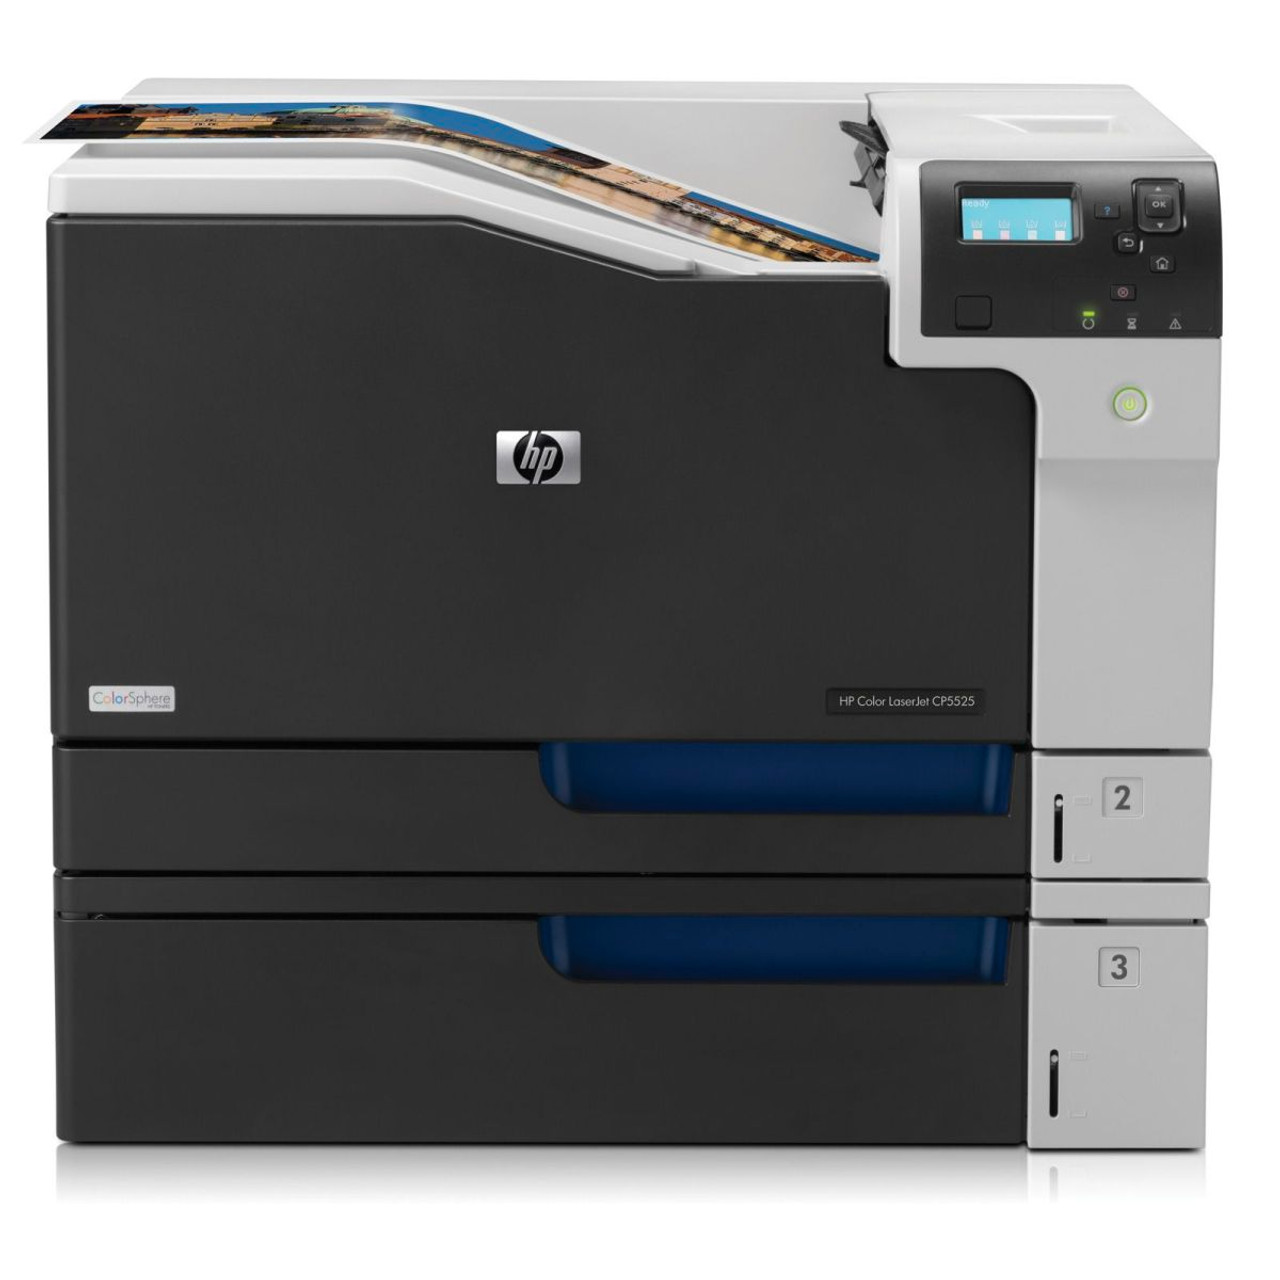 HP Color LaserJet CP5525N - CE707A - HP Laser Printer for sale